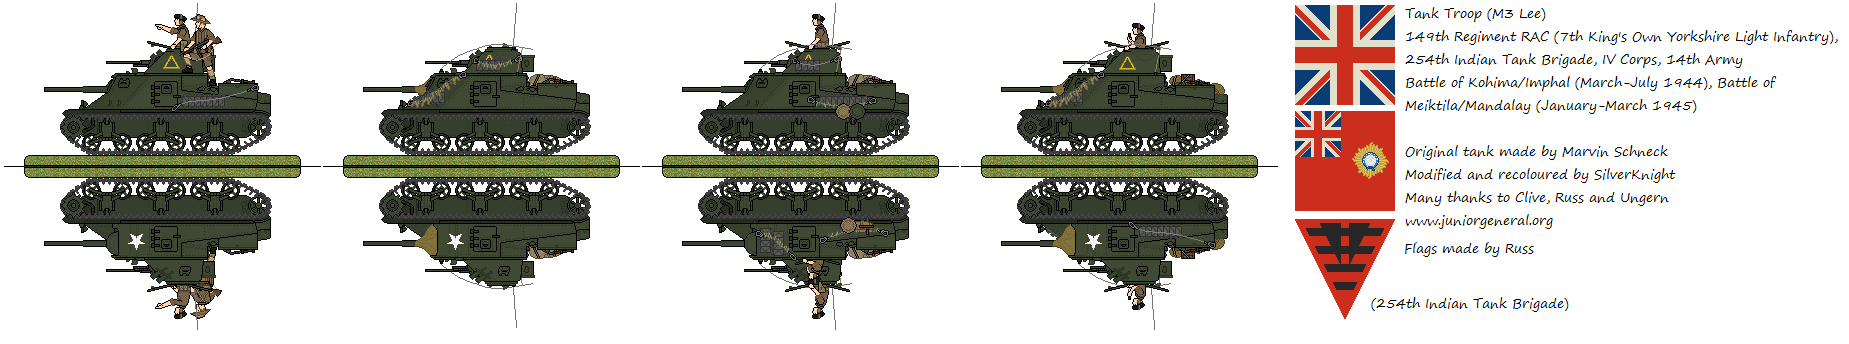 M3 Lee Tank Troop